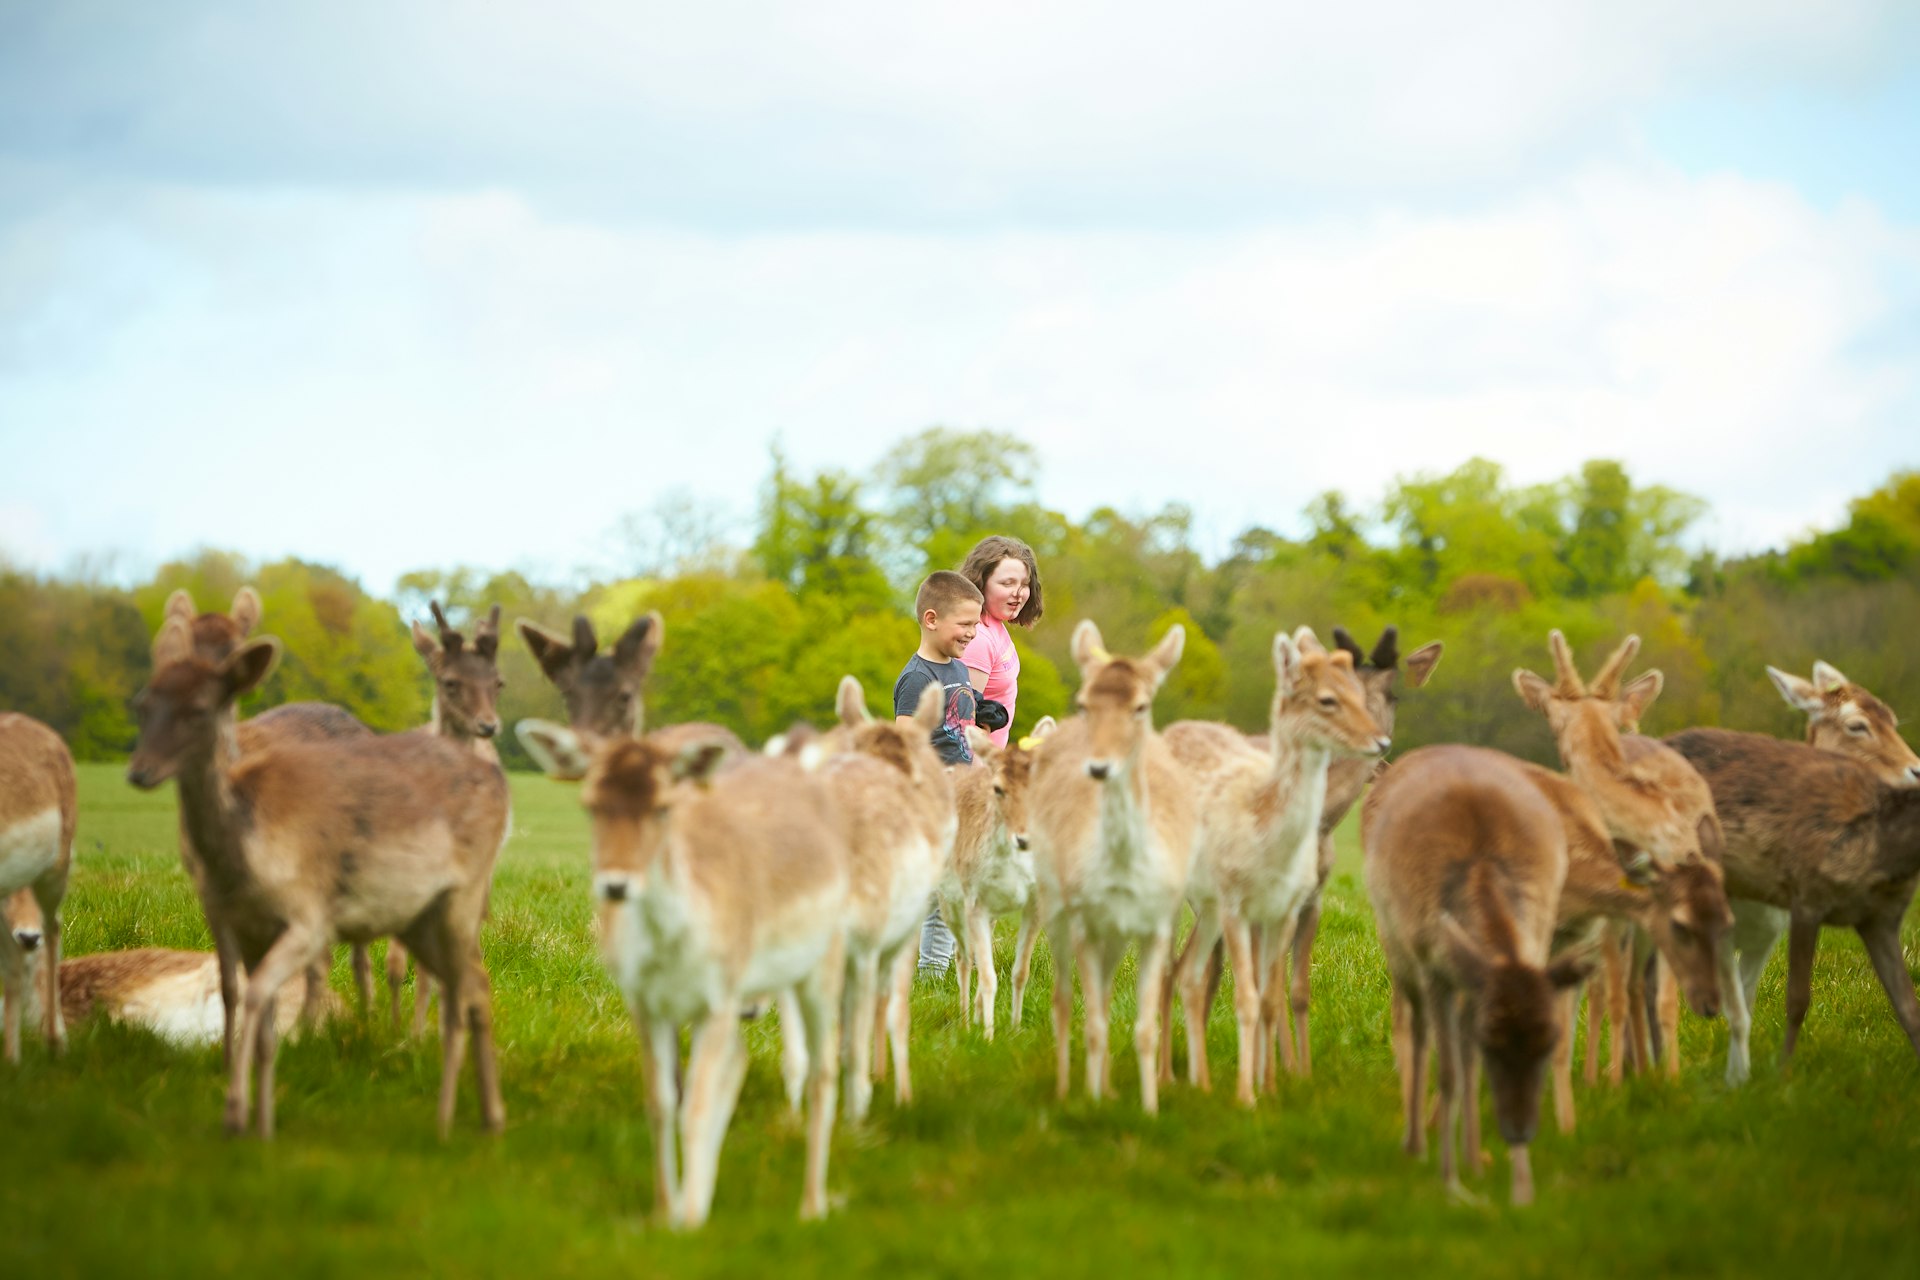 A boy and a girl wander through a group of wild deer, Phoenix Park, Dublin, Ireland